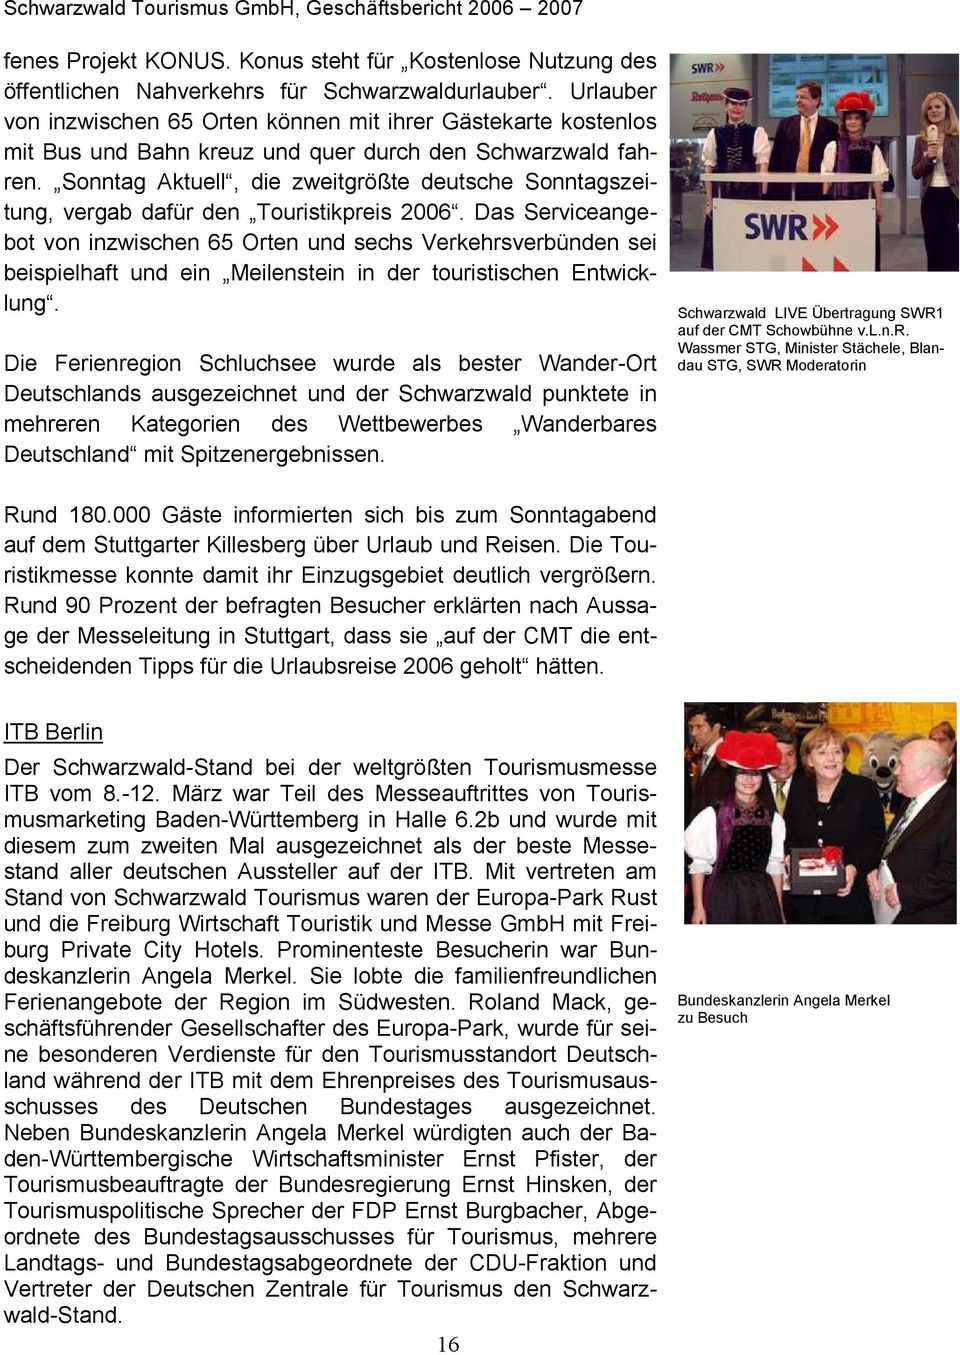 Sonntag Aktuell, die zweitgrößte deutsche Sonntagszeitung, vergab dafür den Touristikpreis 2006.